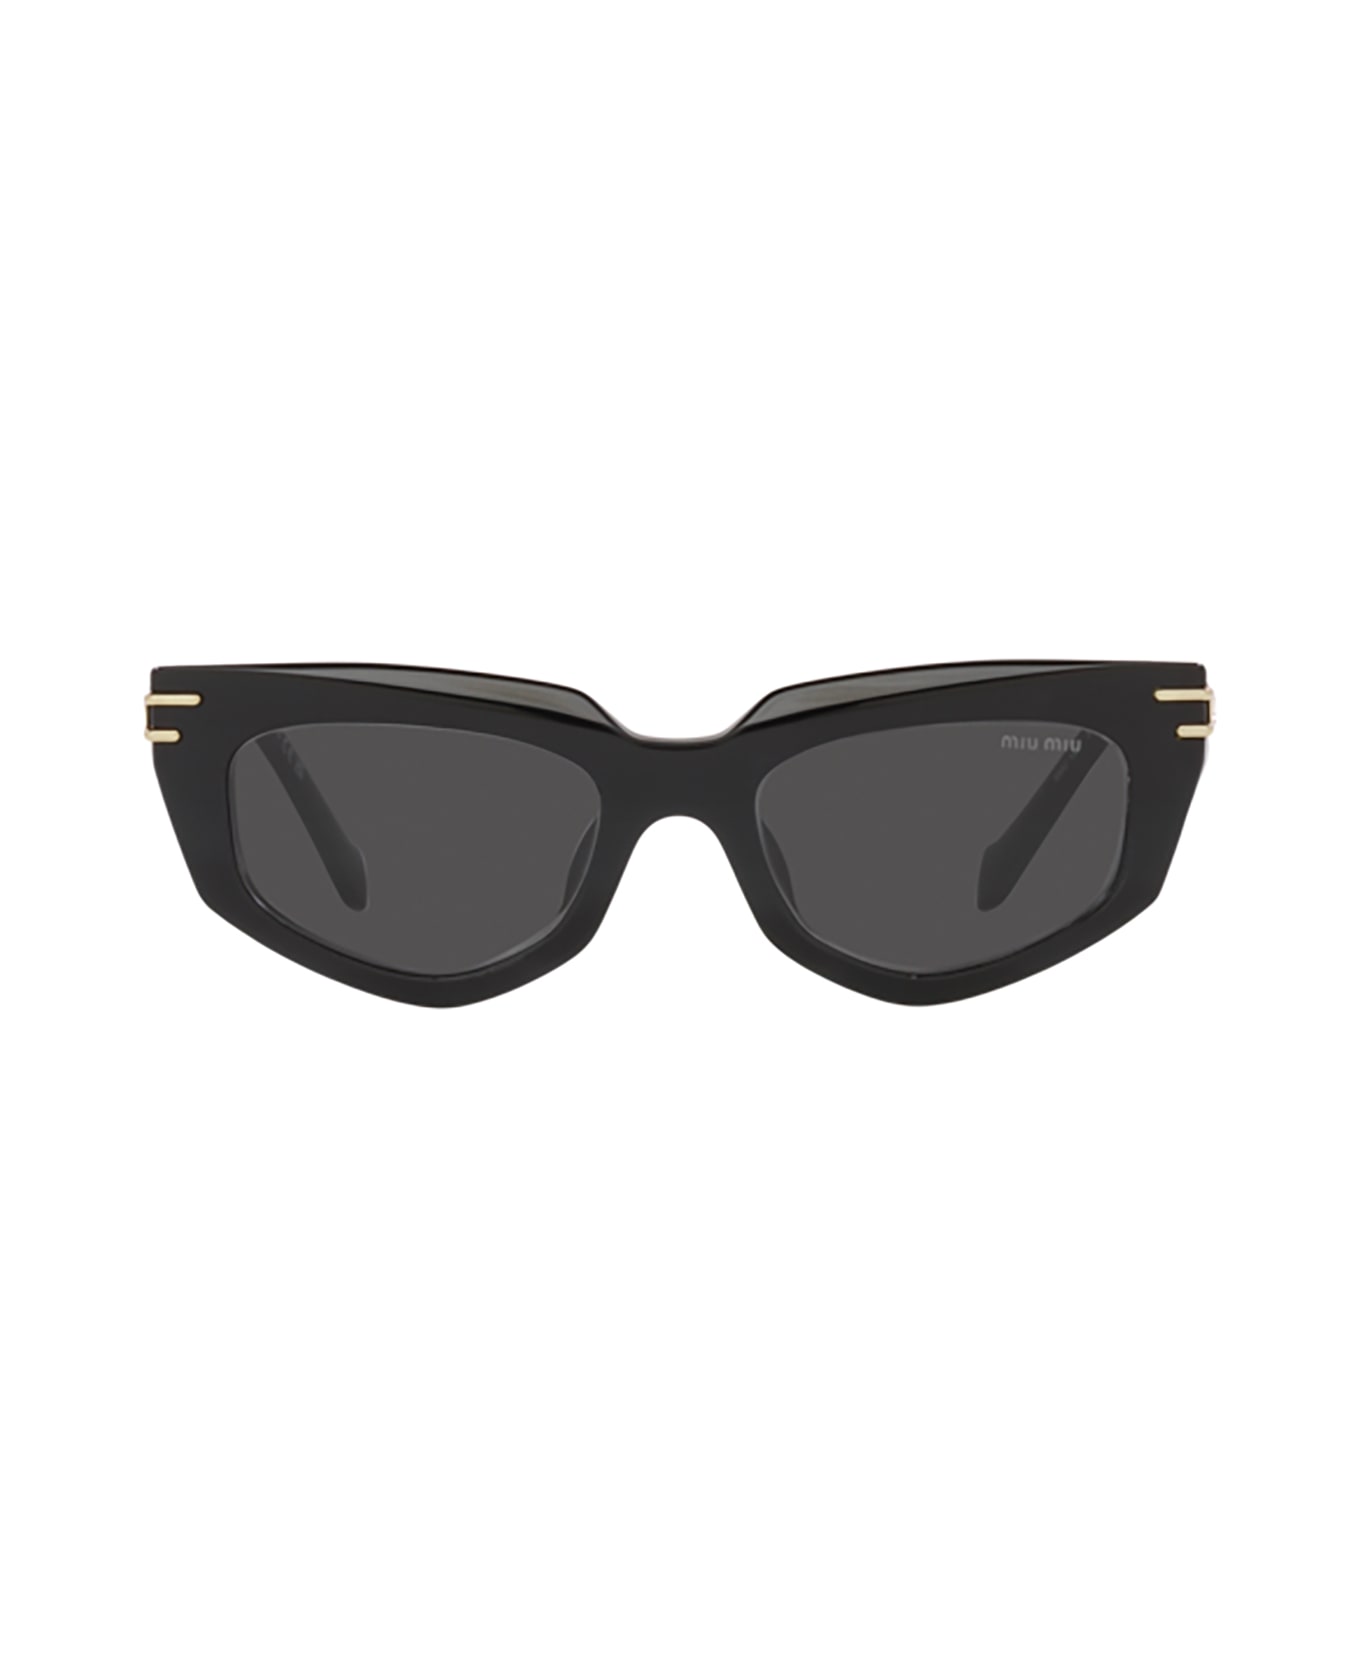 Miu Miu Eyewear Mu 12ws Black Sunglasses - Black